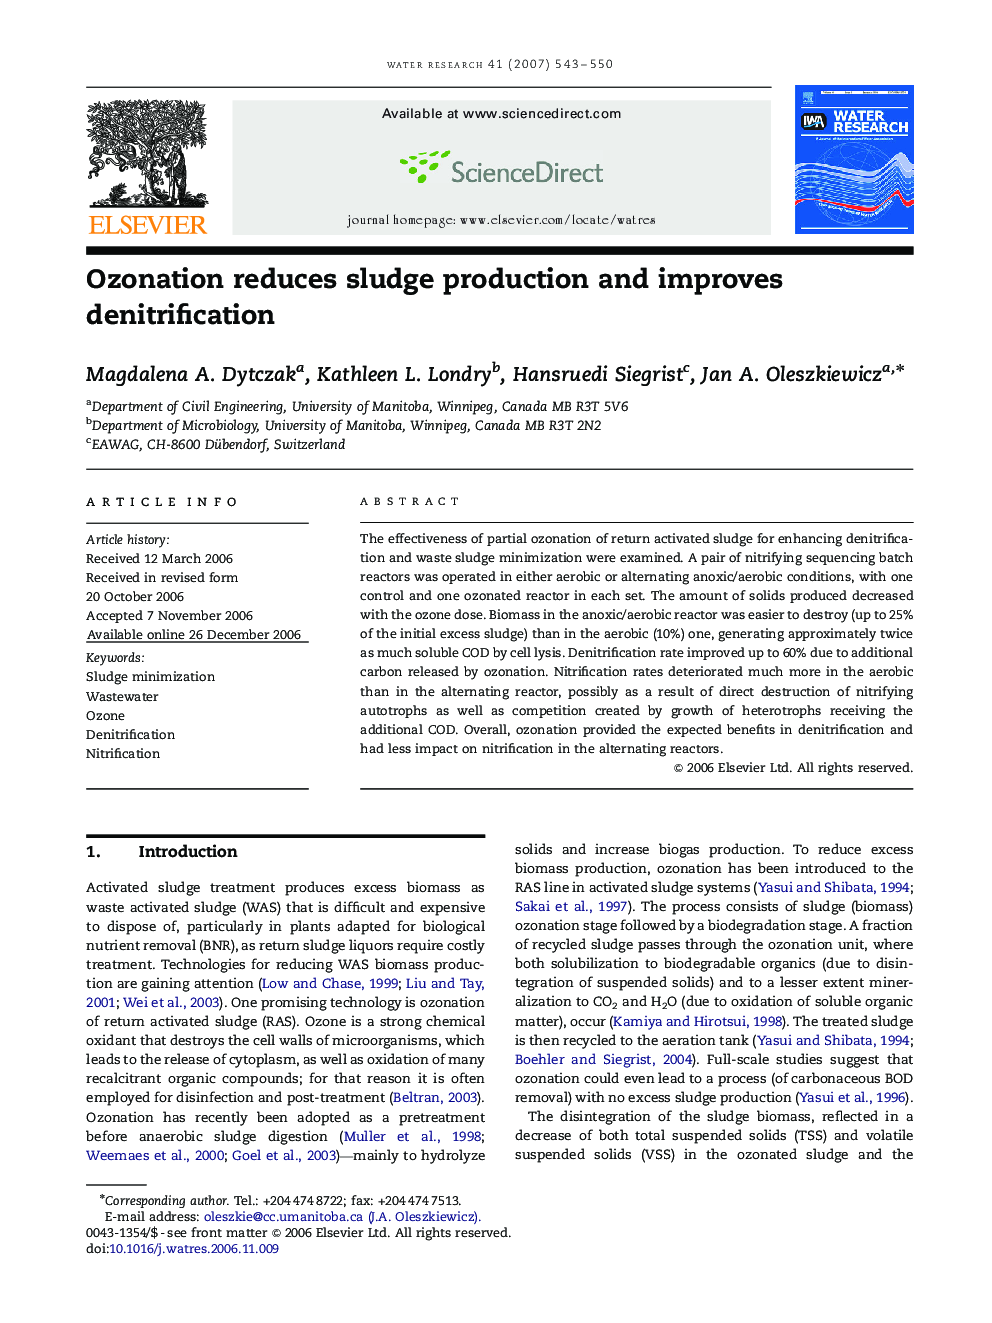 Ozonation reduces sludge production and improves denitrification